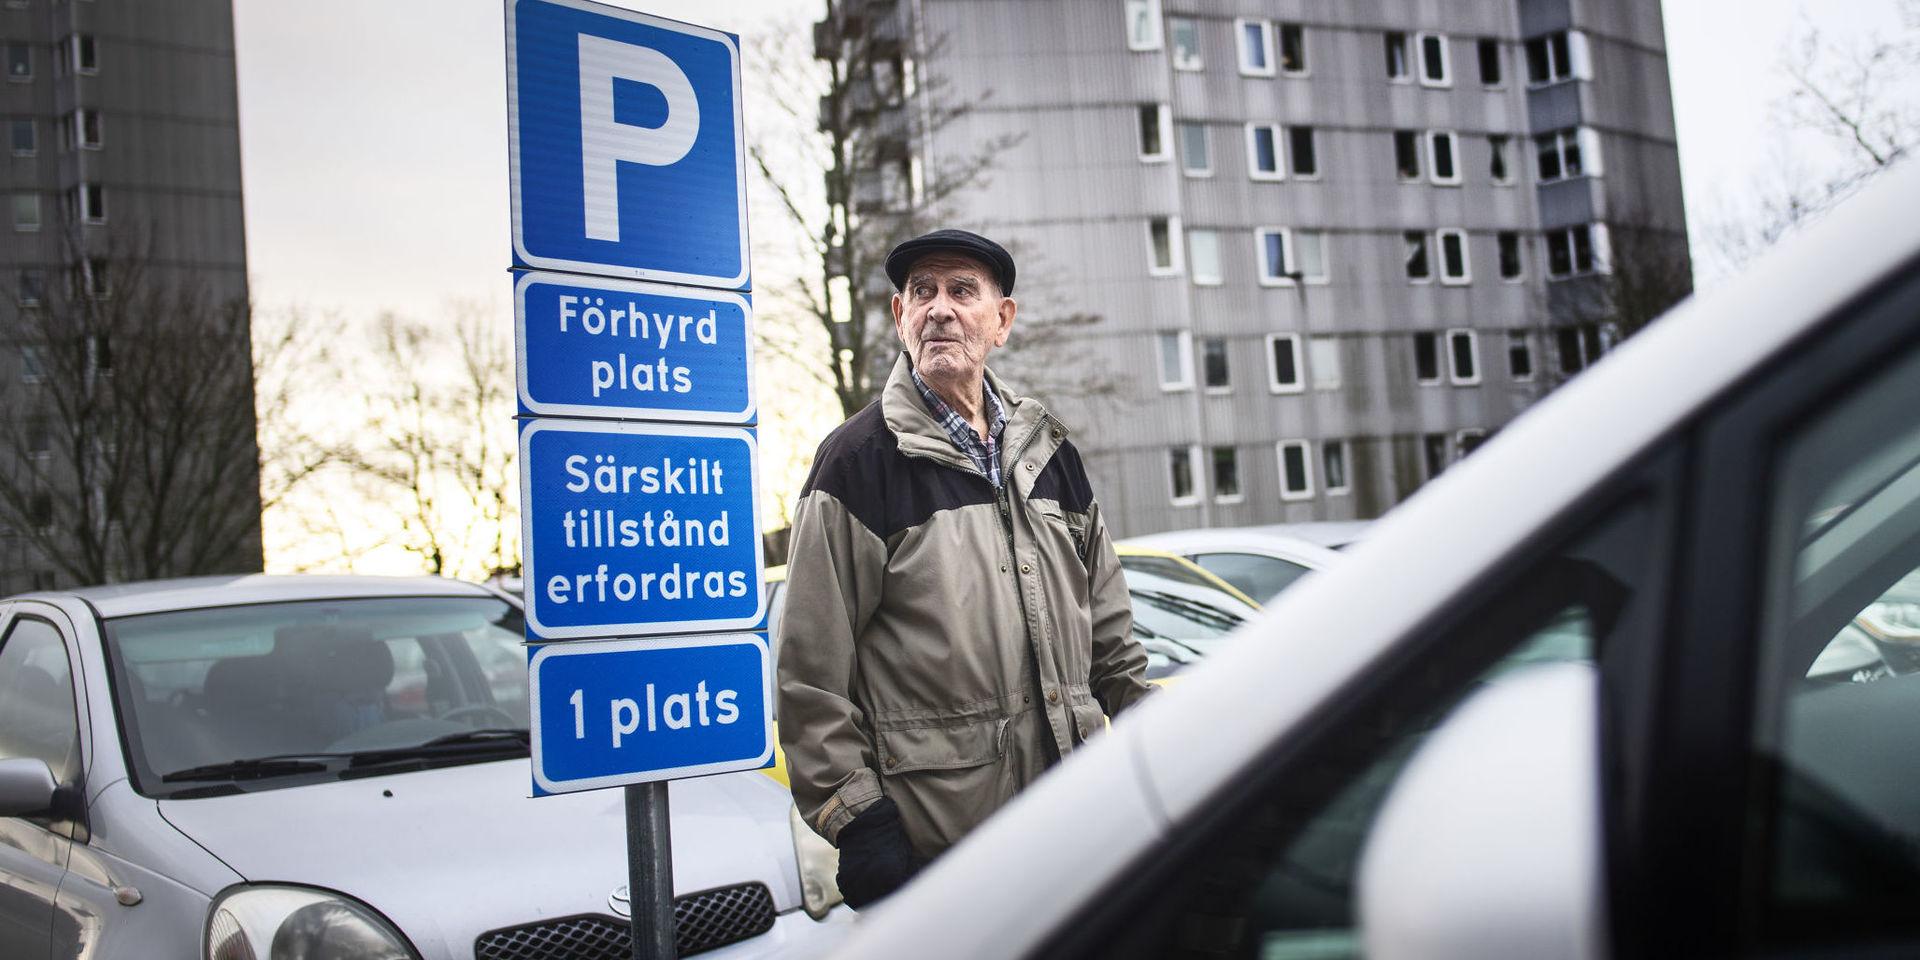 Rolf Lysell i Västra Frölunda blev förbannad när kommunala Bostadsbolaget ville ta hans p-plats. Han överklagade beslutet – och fick rätt. Domen kan gynna många göteborgare.